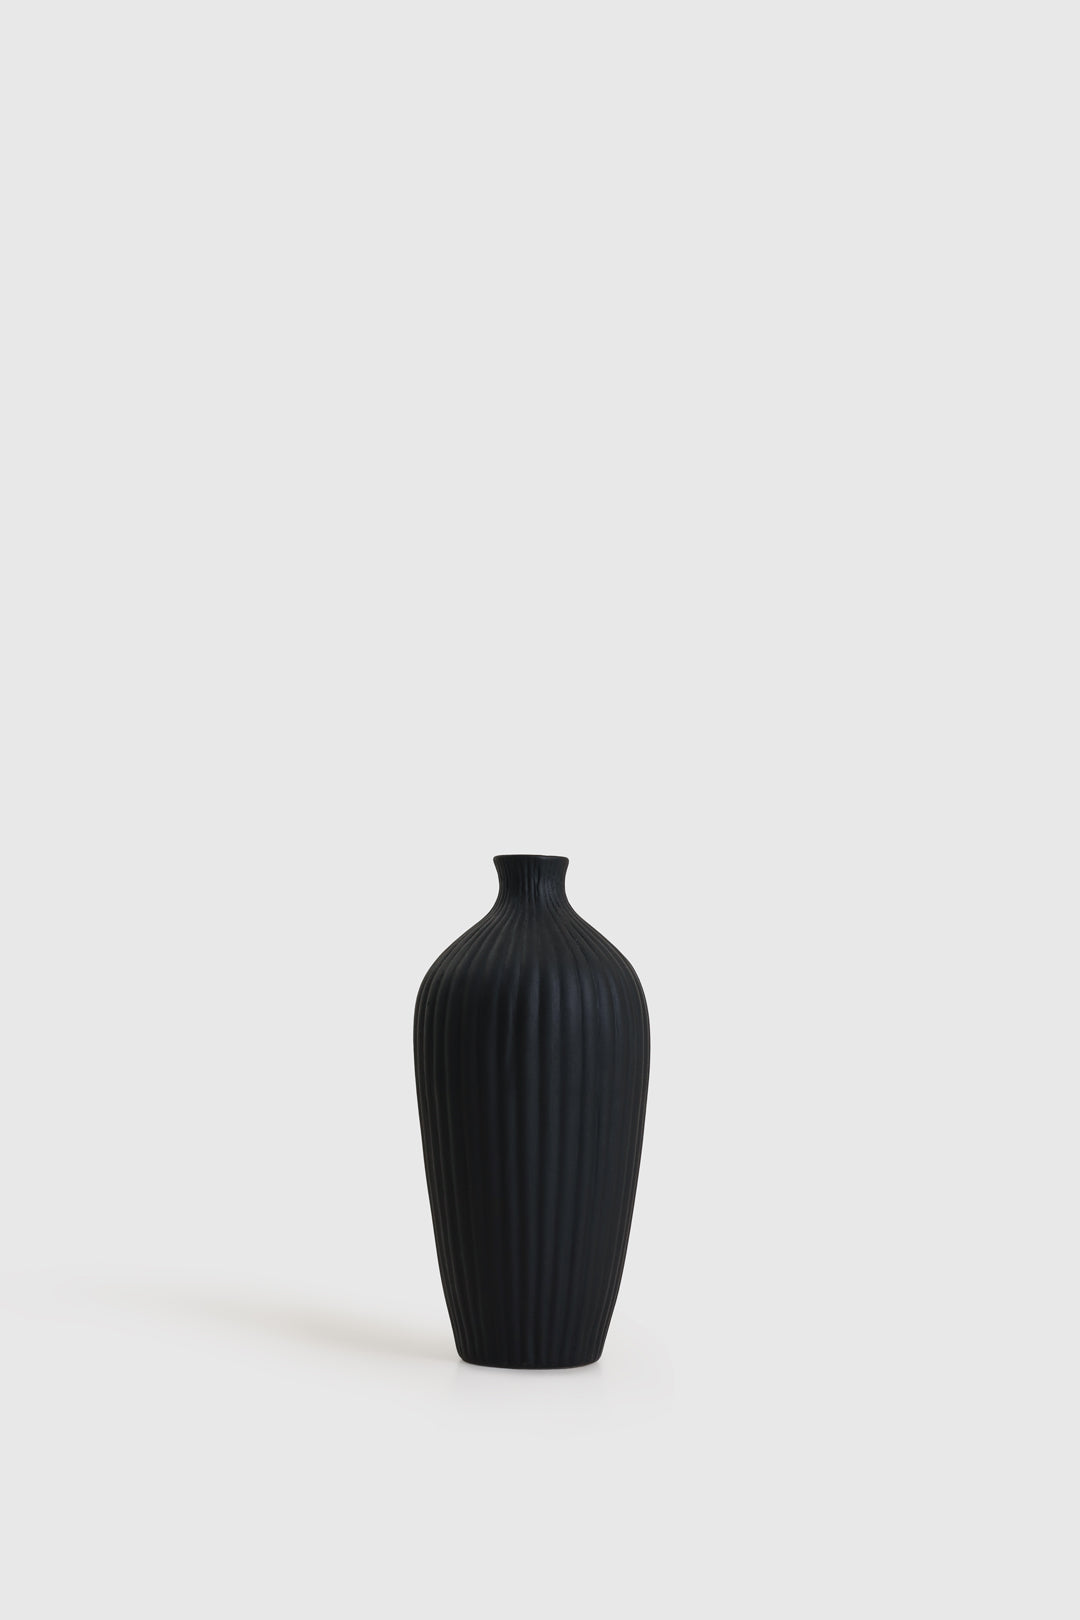 Saroi Vase Black 10 inch